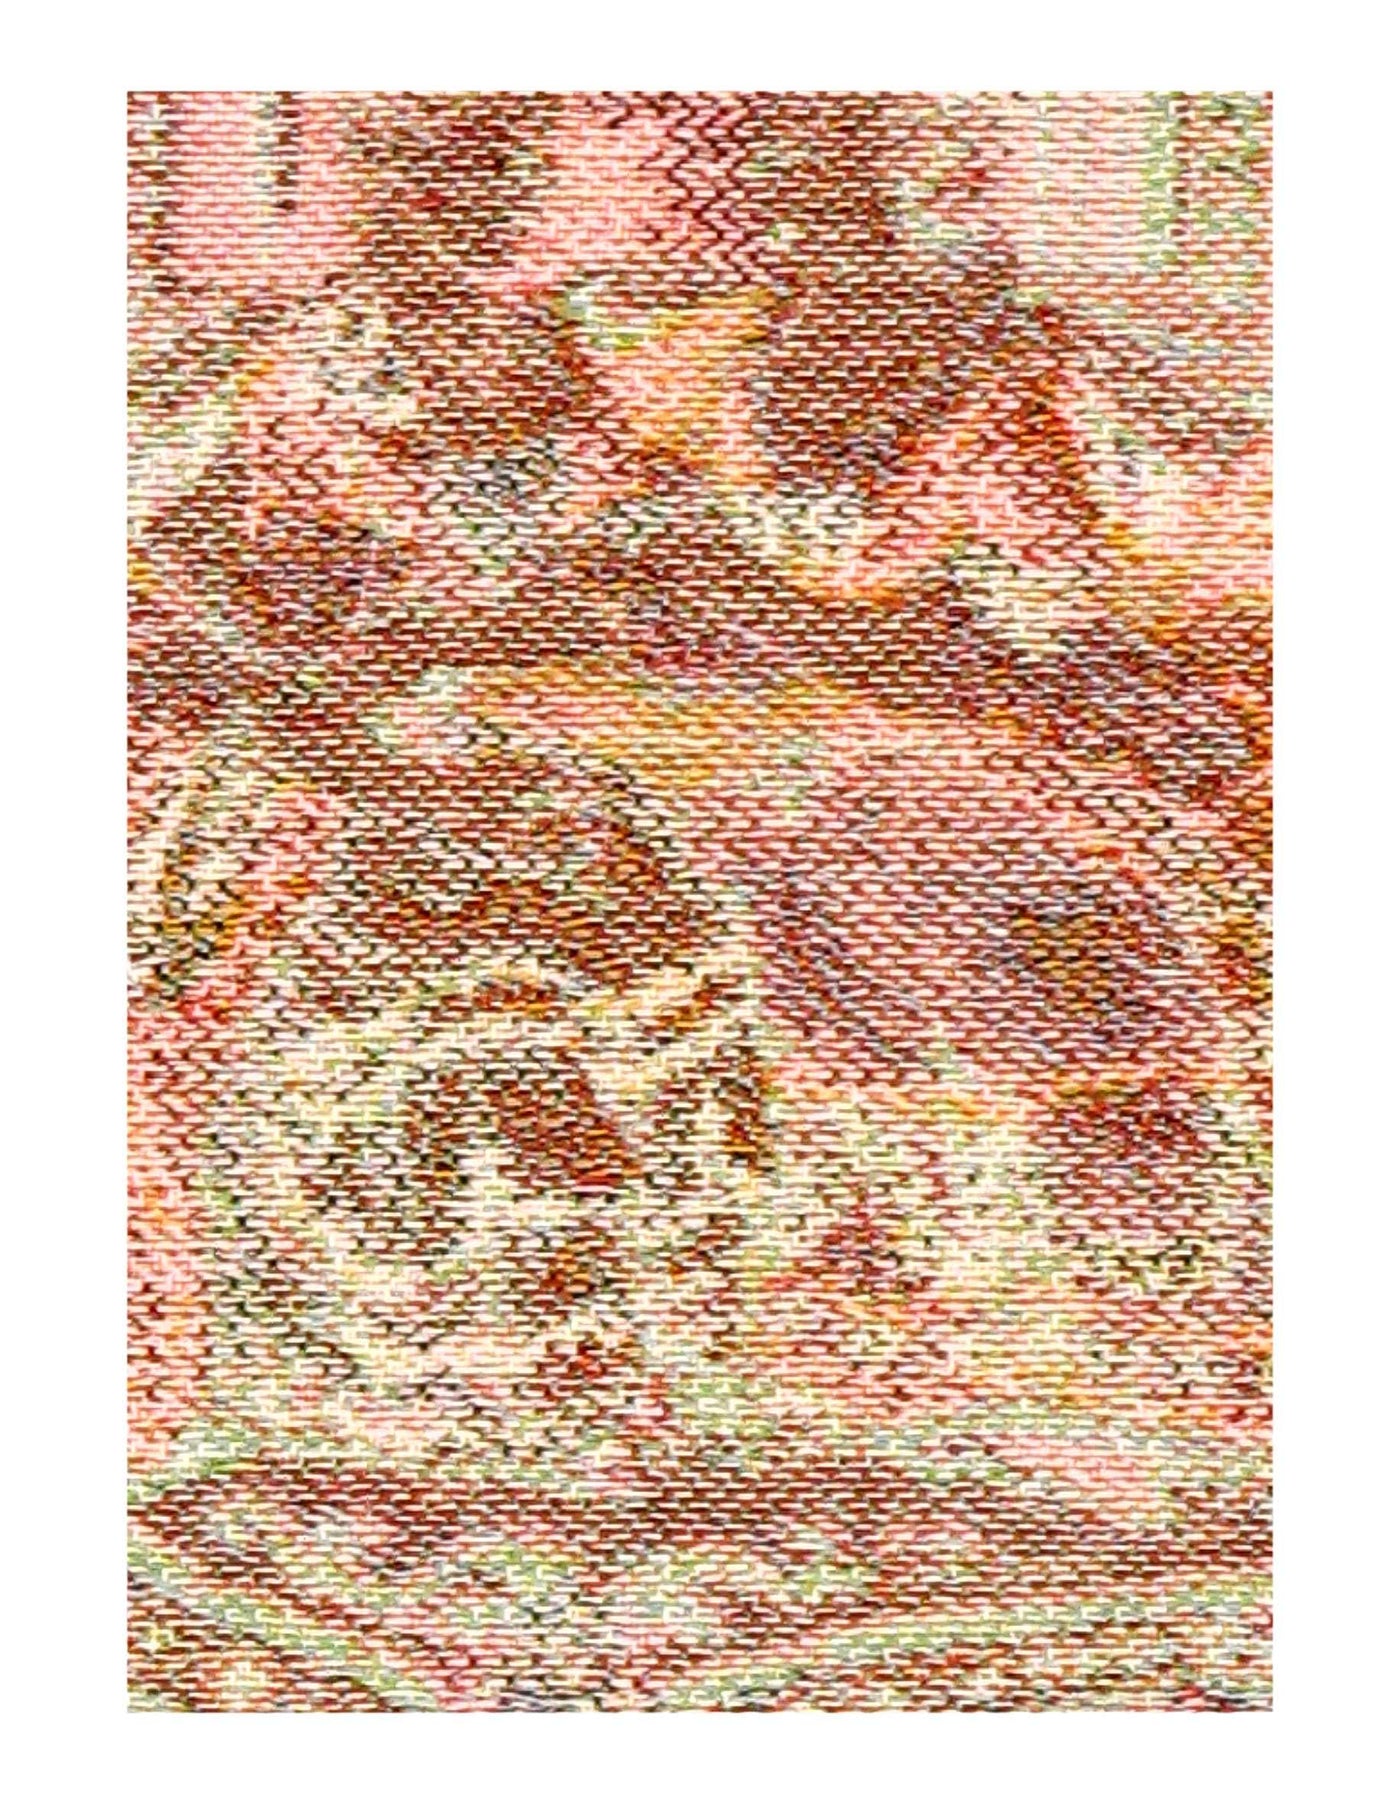 Genre Tapestry Landscape Romantic Vintage 1' X 1'3''